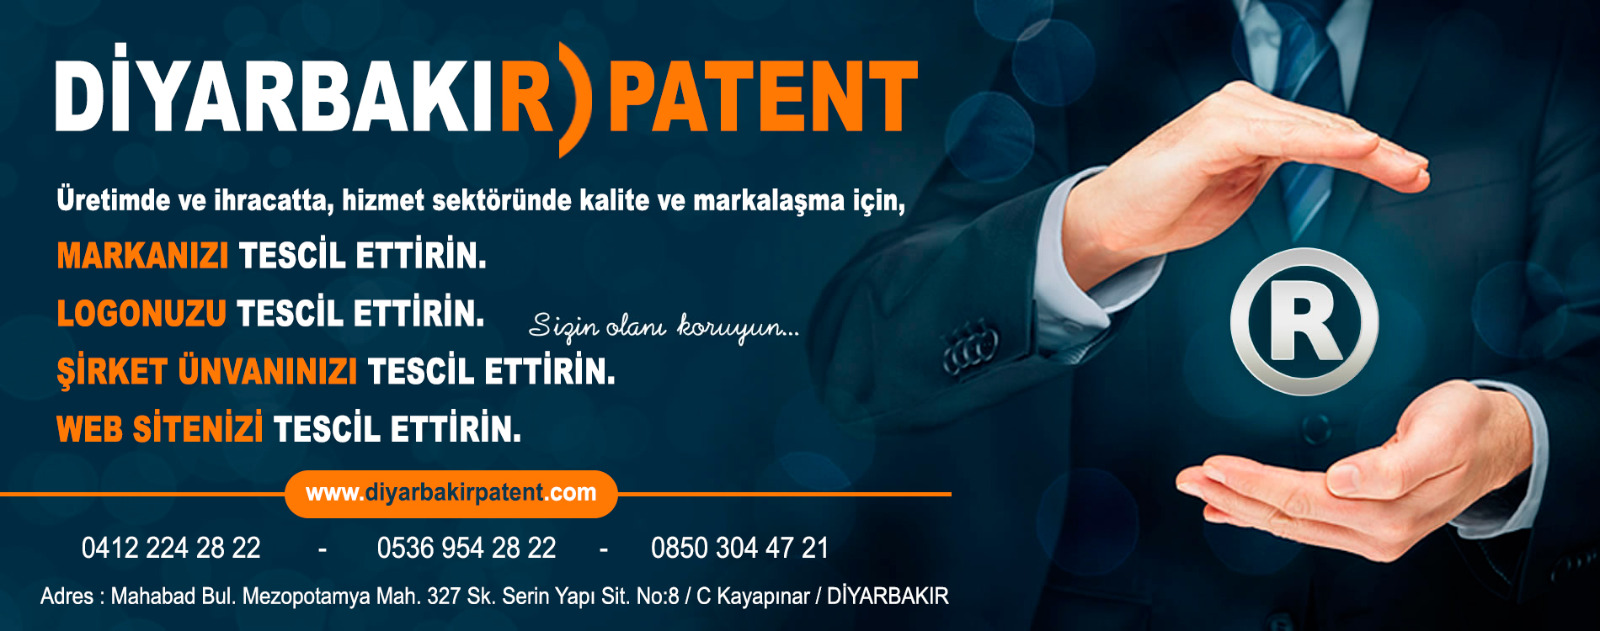 Topyolu Mahallesi Bağlar Diyarbakır Marka Patent Firması 0412 224 28 22